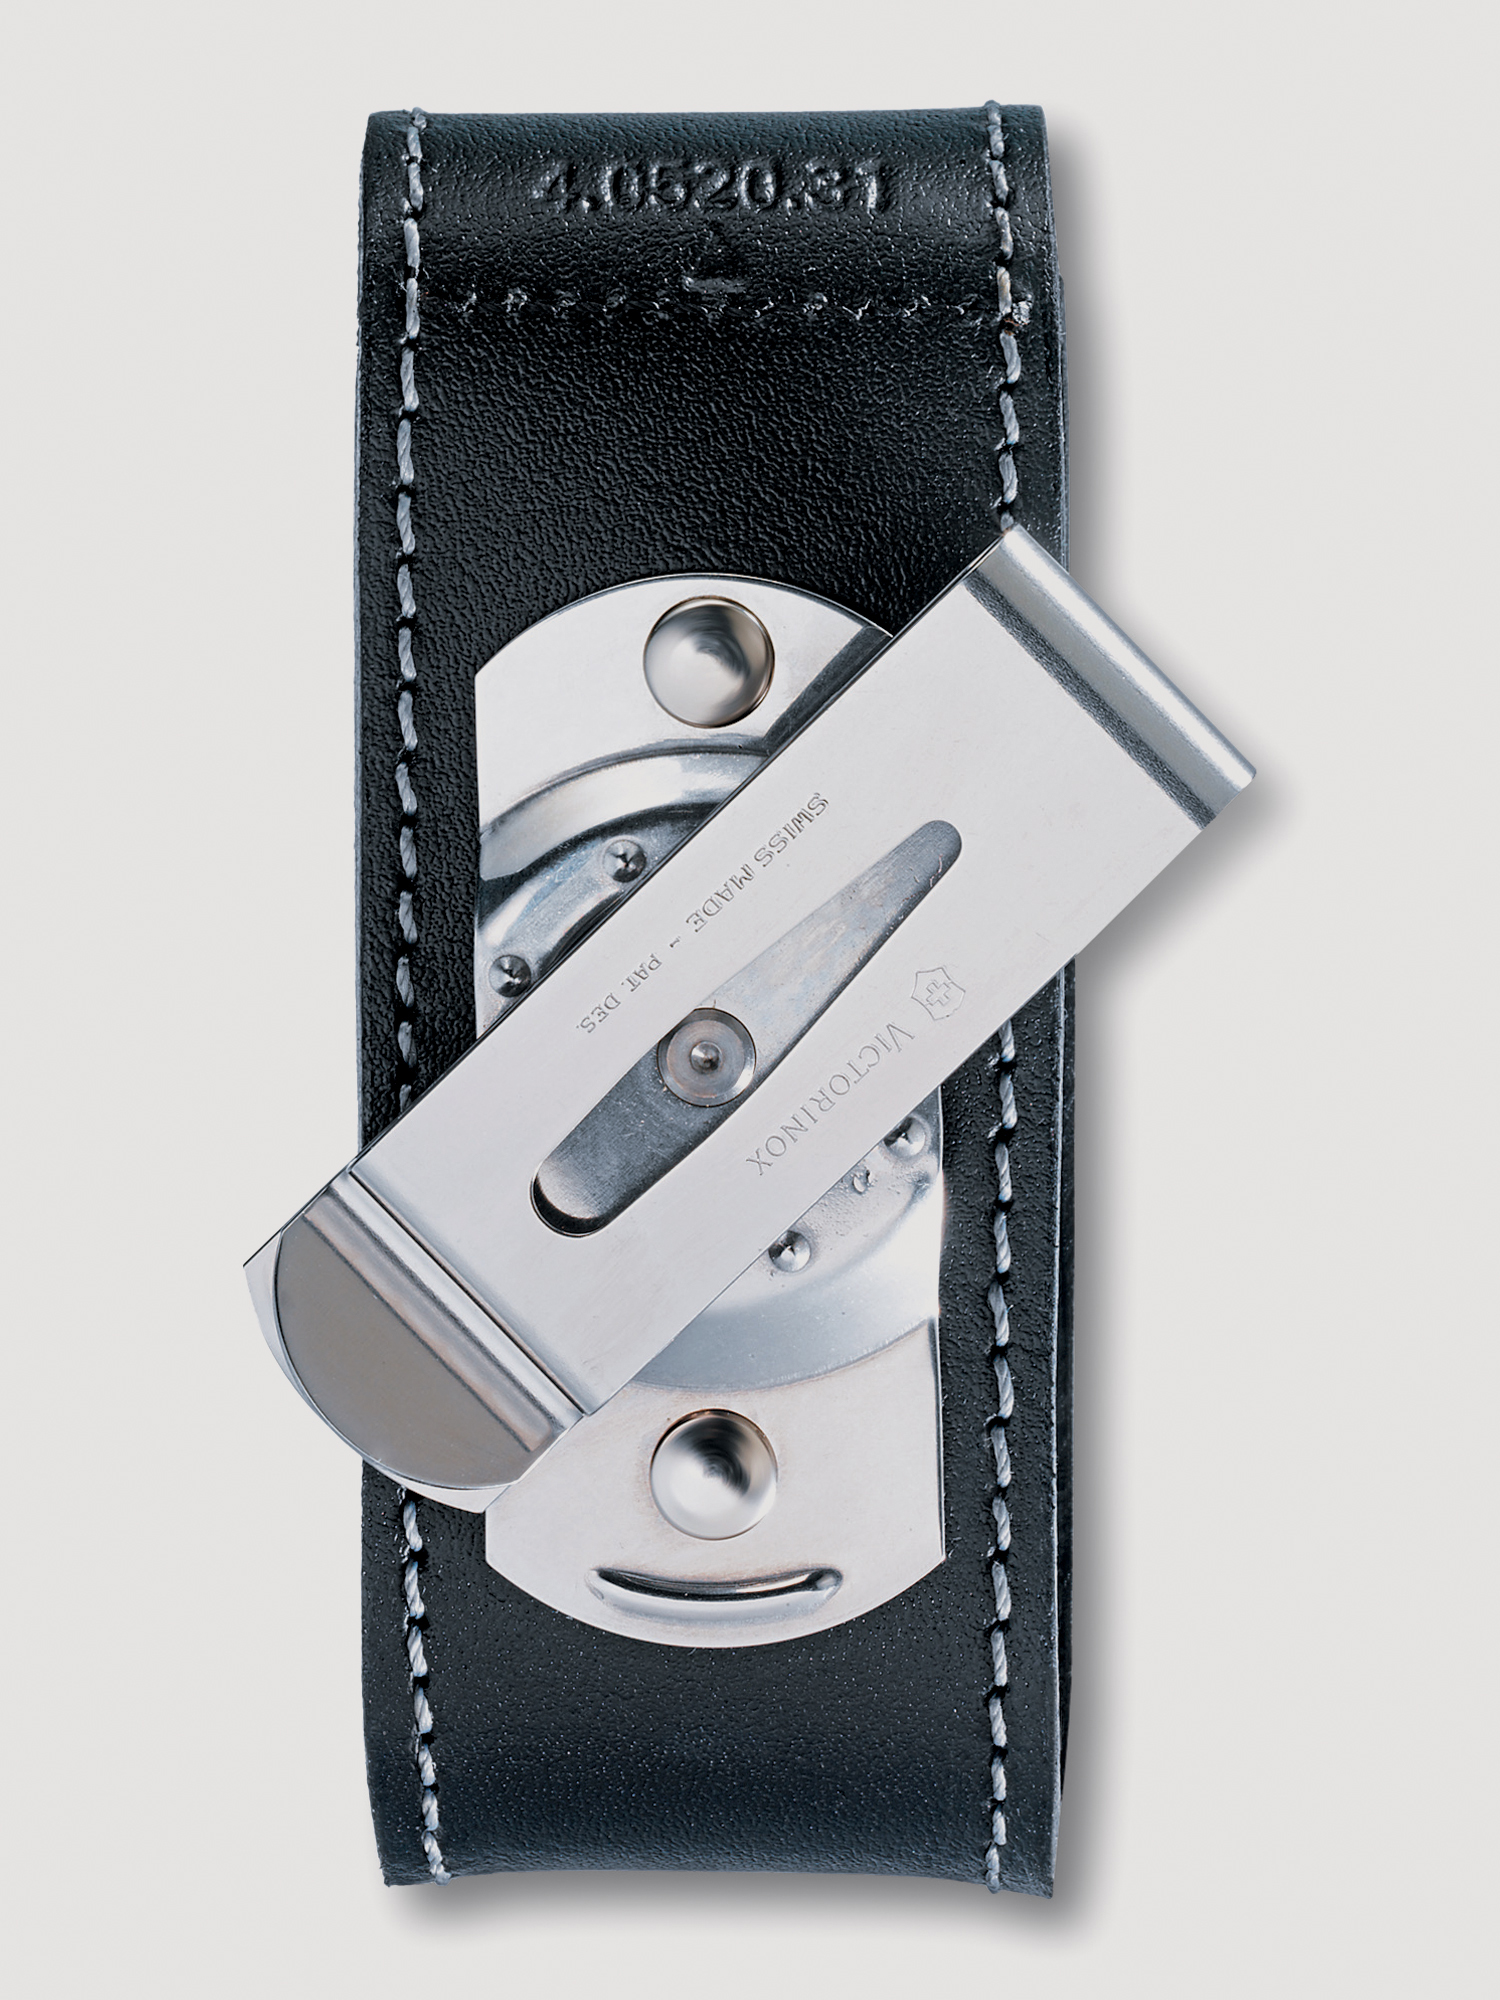 Чехол на ремень VICTORINOX для ножей 91мм толщиной 2-4 уровня, с поворотной клипсой, кожаный, чёрный, Черный чехол на ремень victorinox для ножей 111 мм толщиной 3 уровня с поворотной клипсой кожаный чёрный